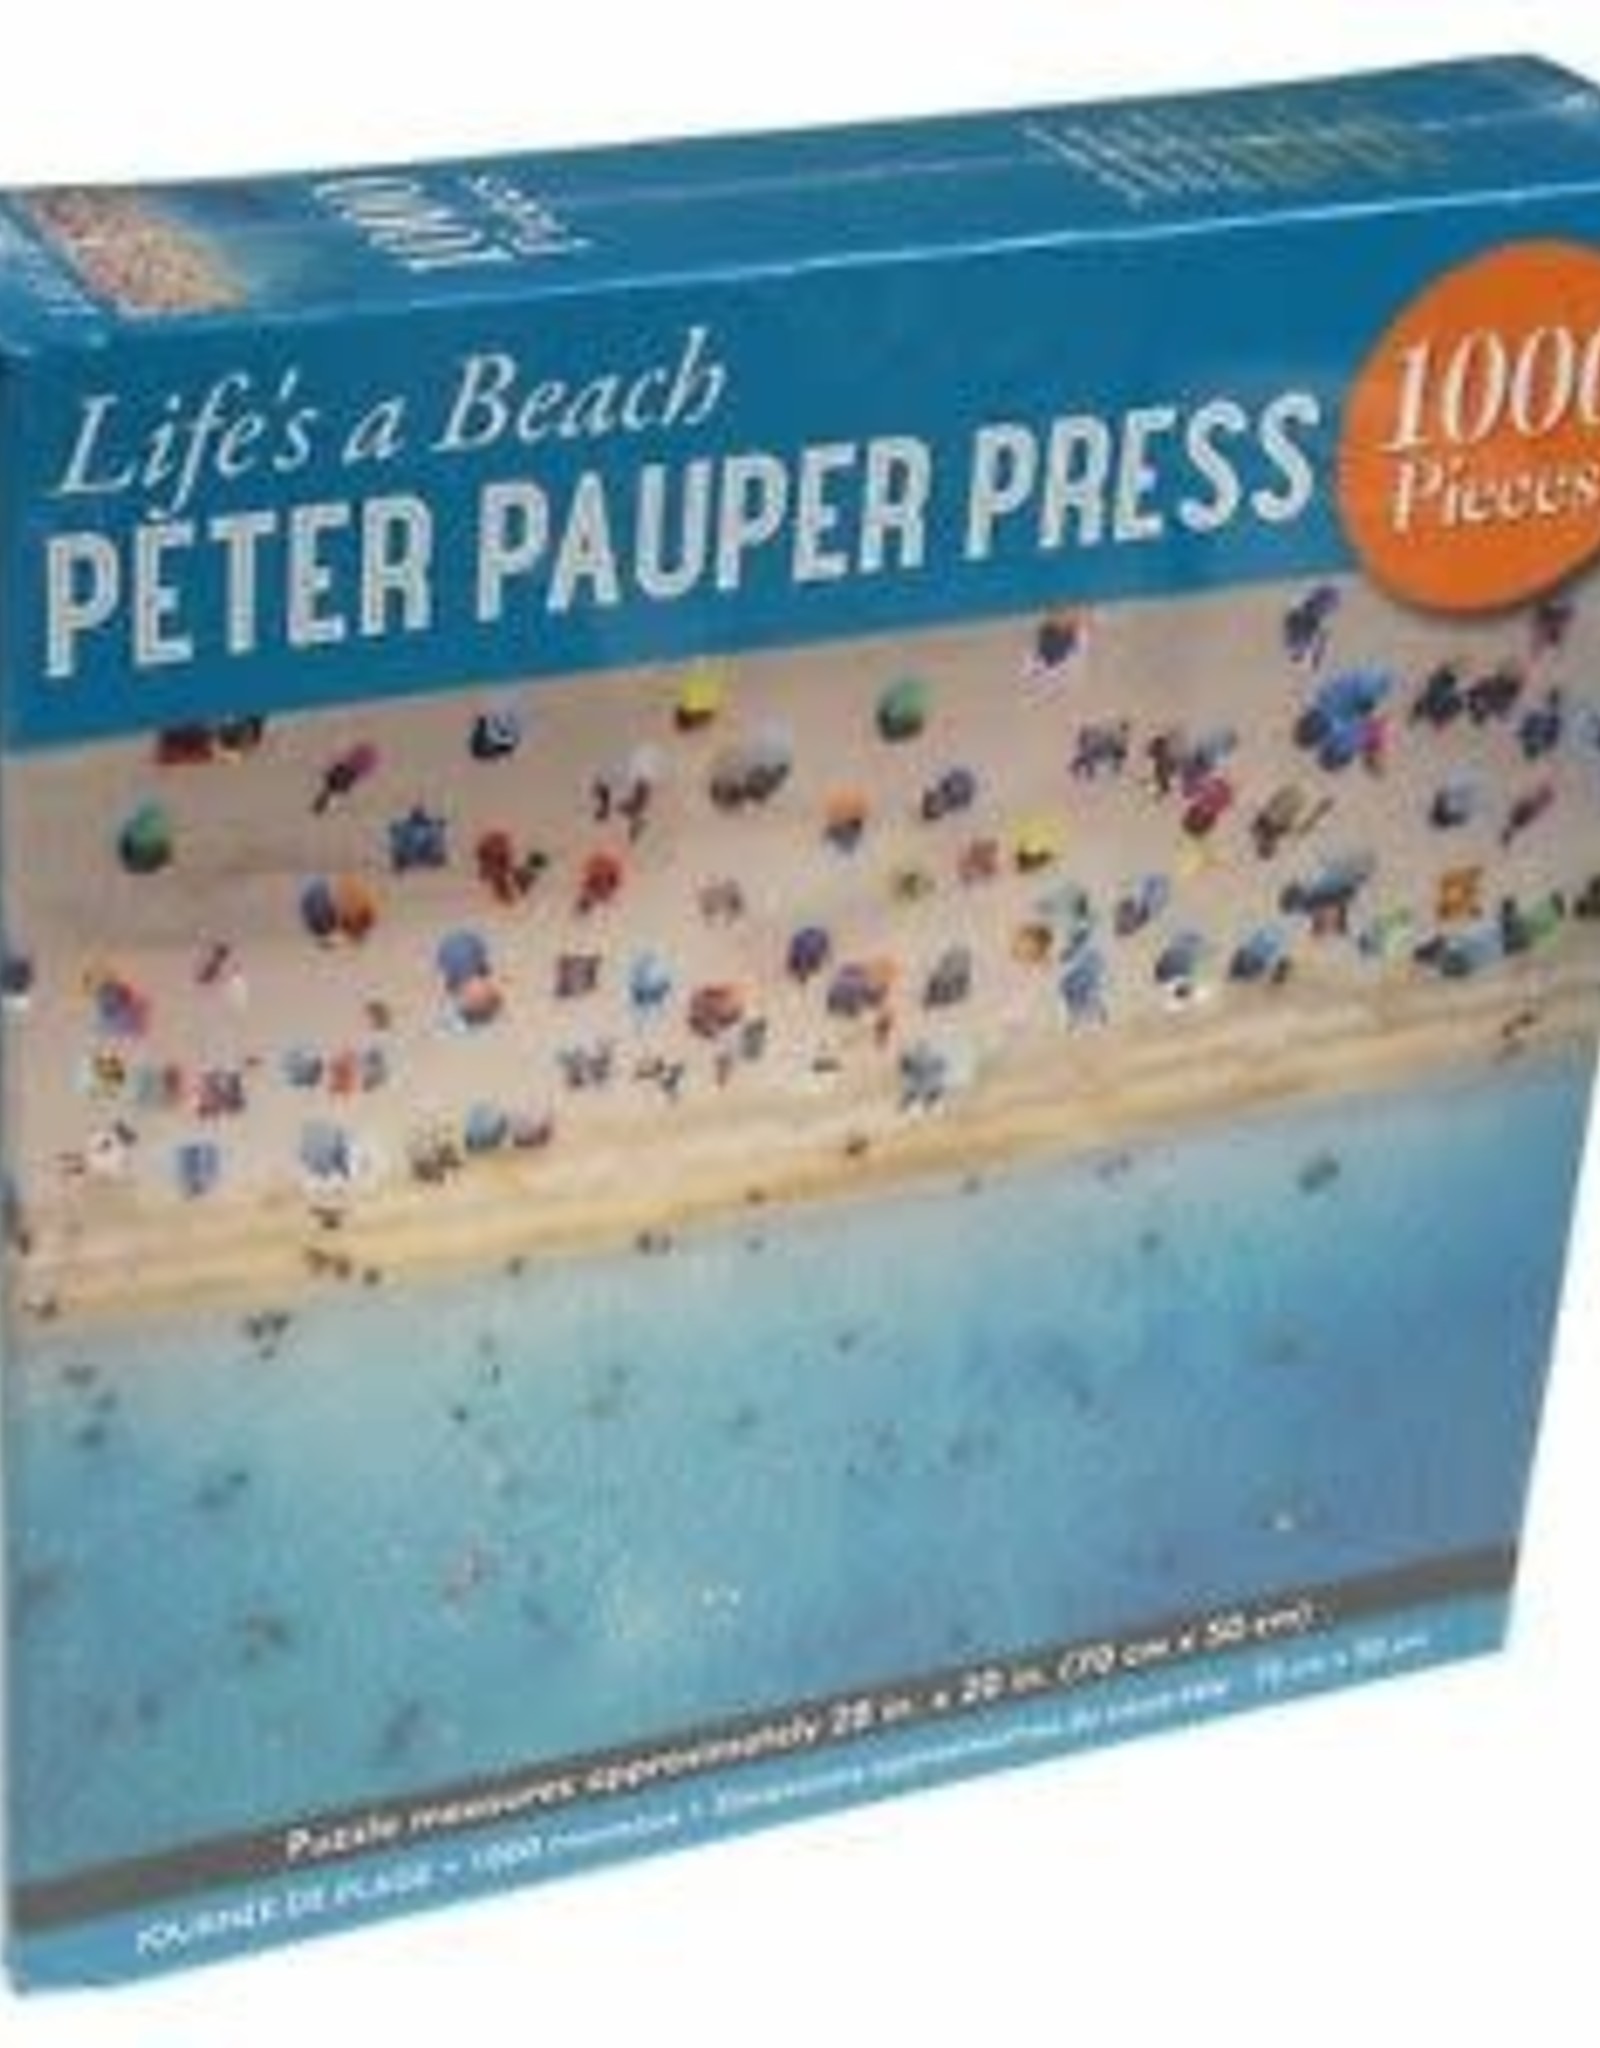 Peter Pauper Press LIFE'S A BEACH 1000 PIECE JIGSAW PUZZLE